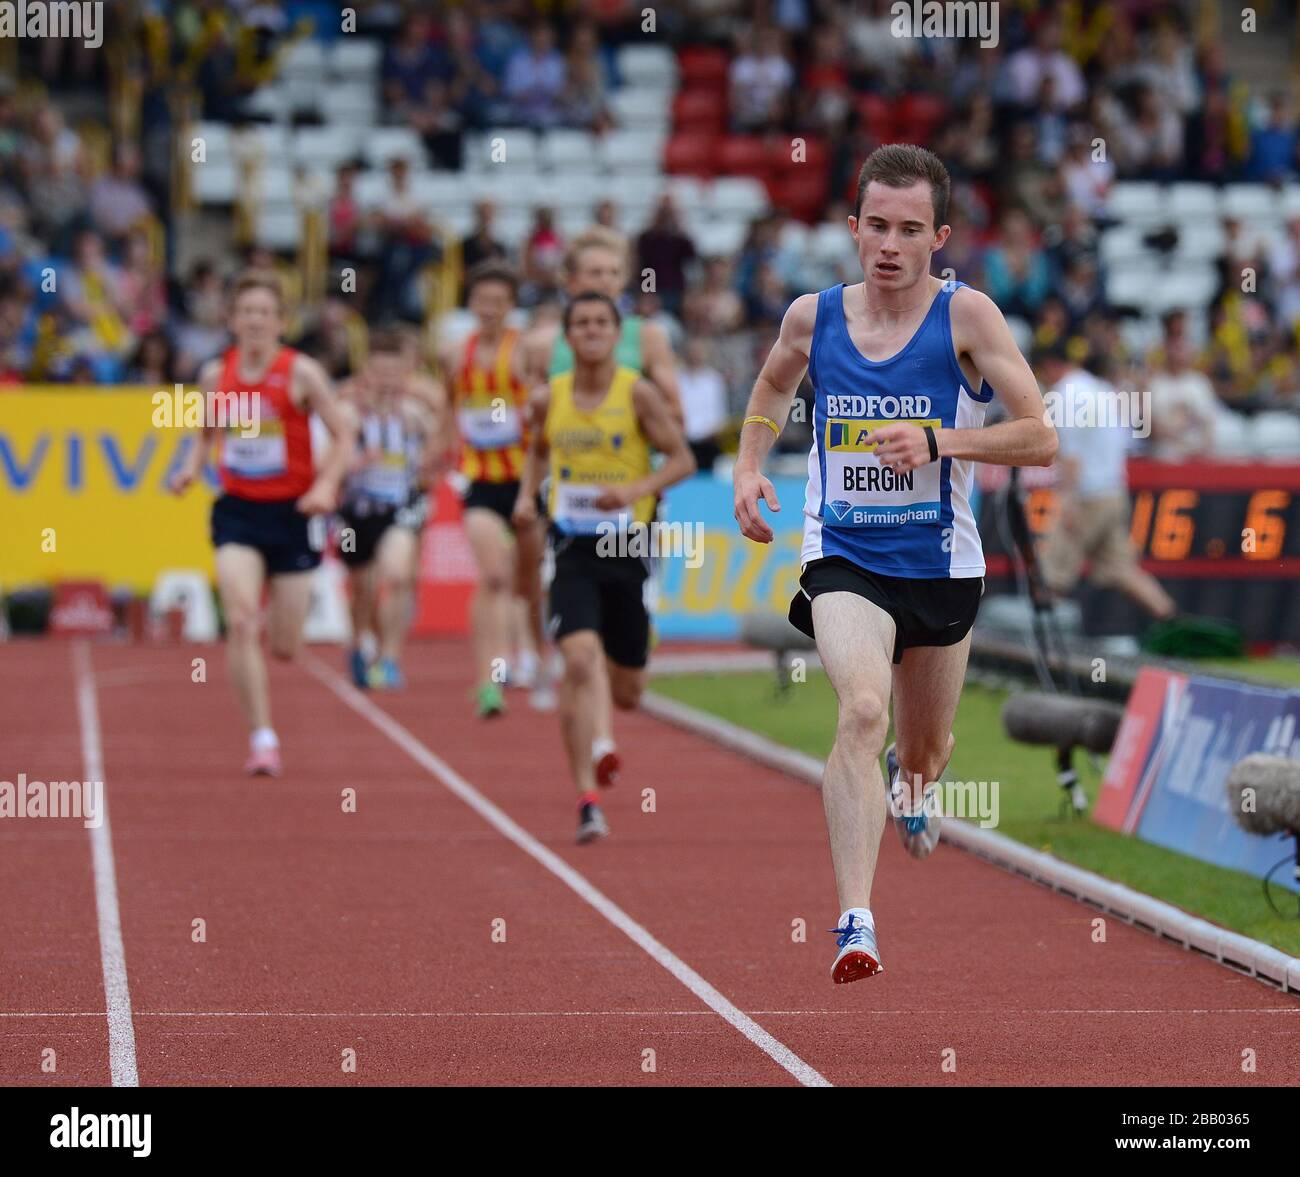 Great Britain's Matt Bergin on his way to winning the Men's 3000m U20 race Stock Photo